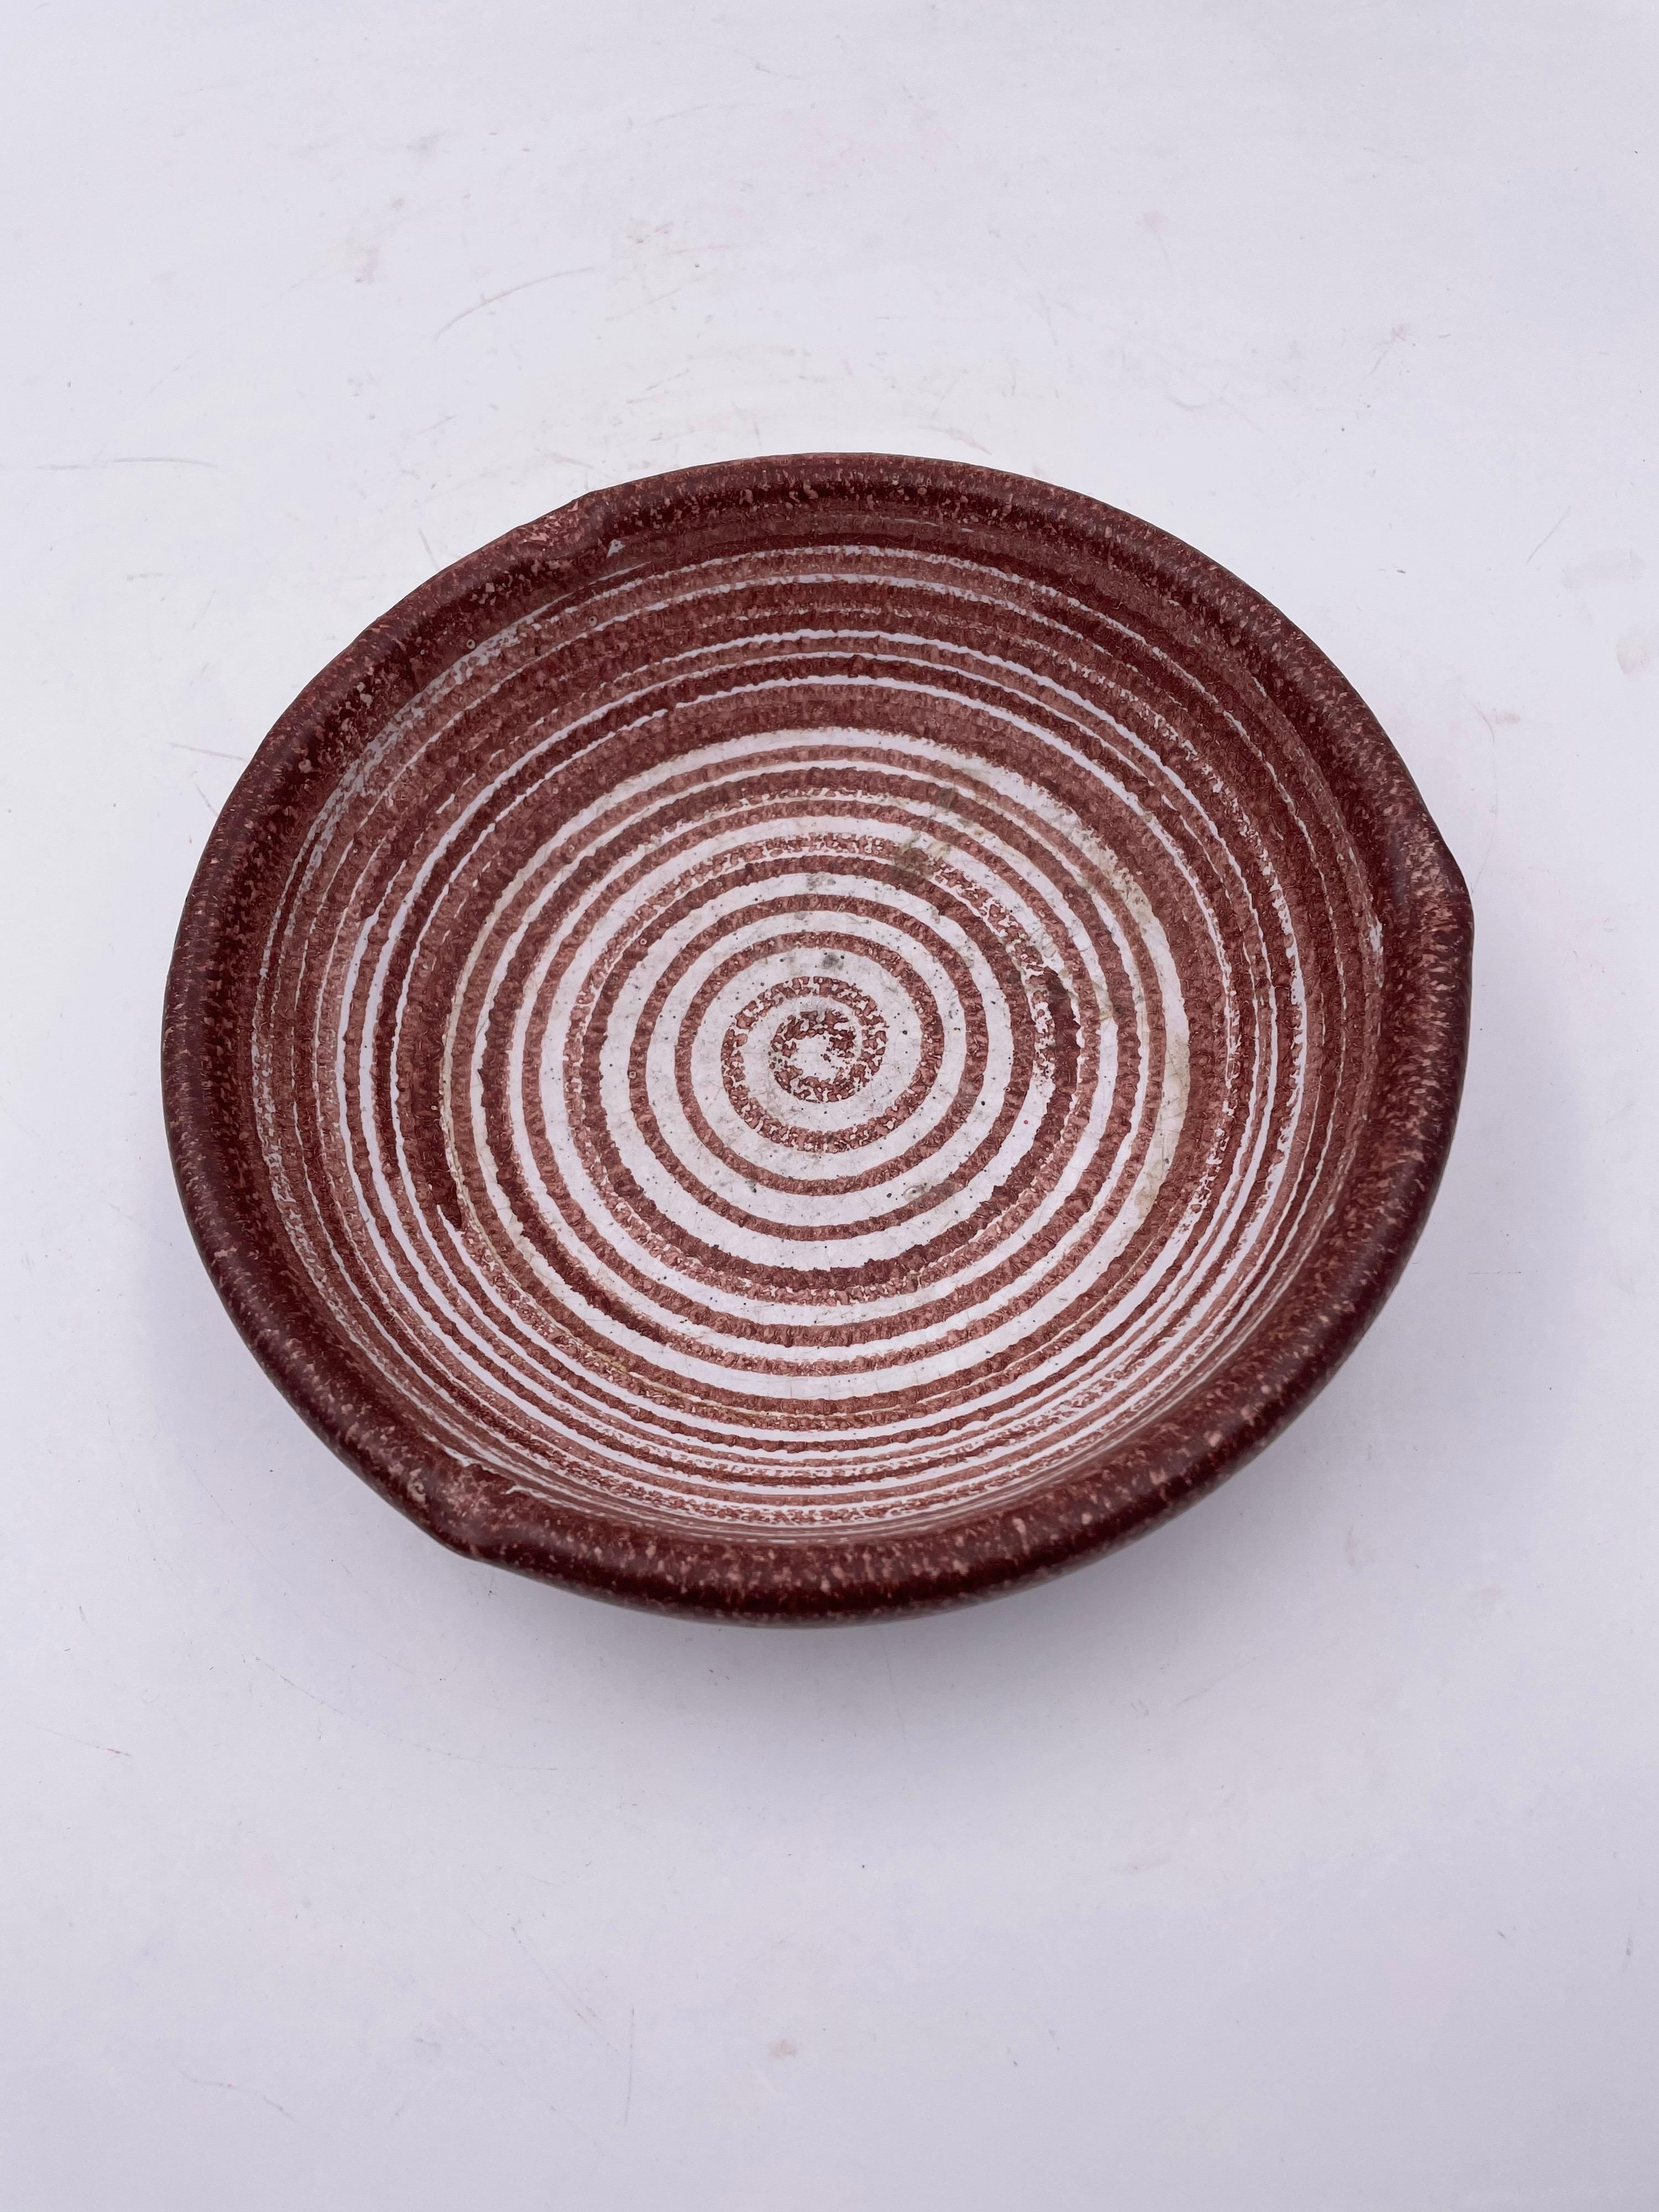 Schöne Keramik Aschenbecher Hand gemalt circa 1960's, in Griechenland großen Zustand keine Chips oder Risse gemacht.